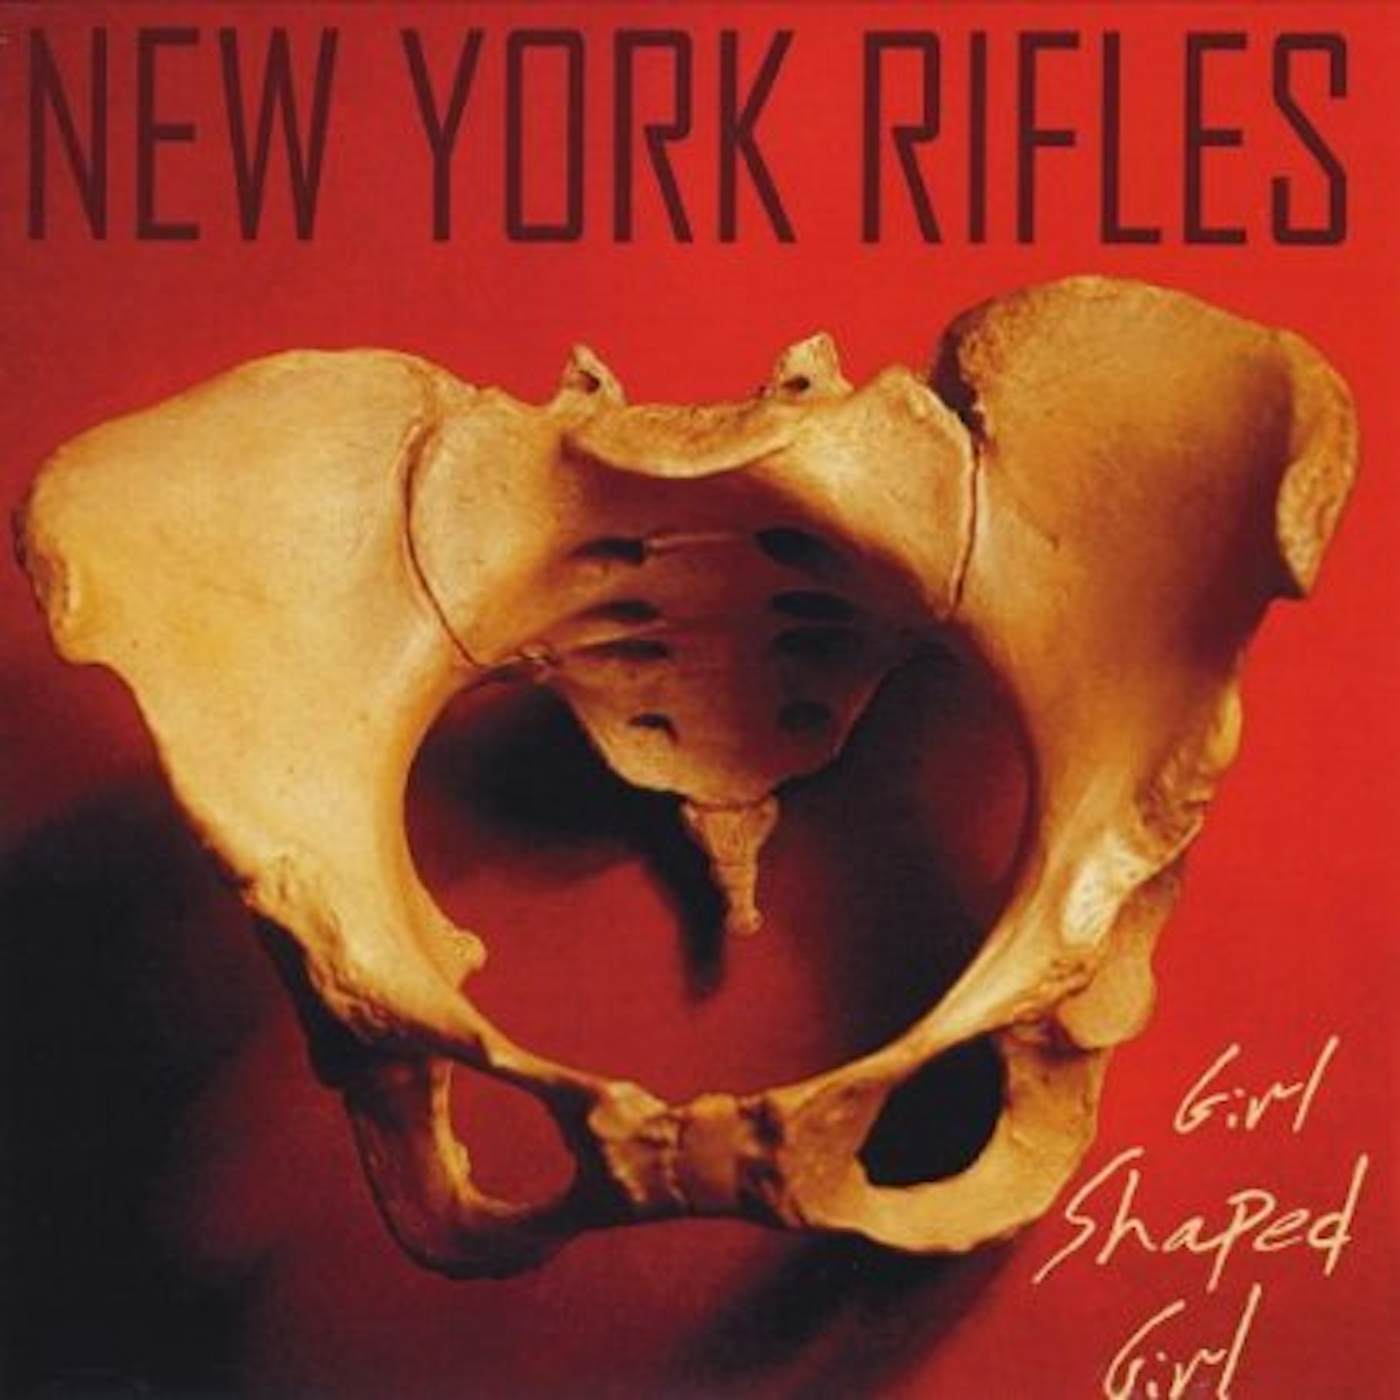 New York Rifles GIRL SHAPED GIRL CD